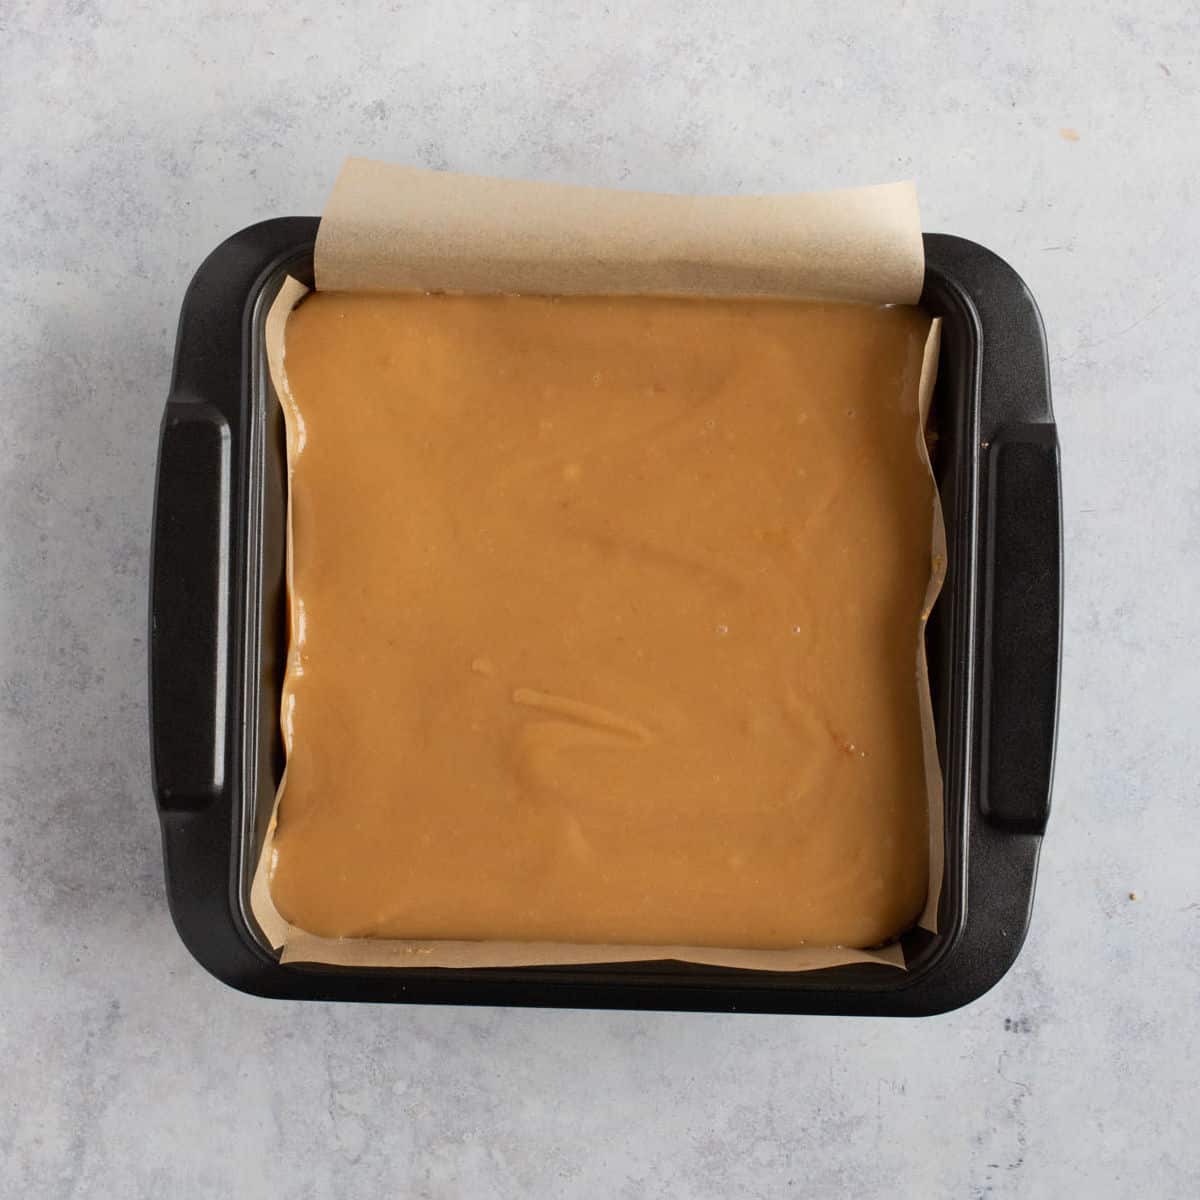 Caramel layer in a baking tin.